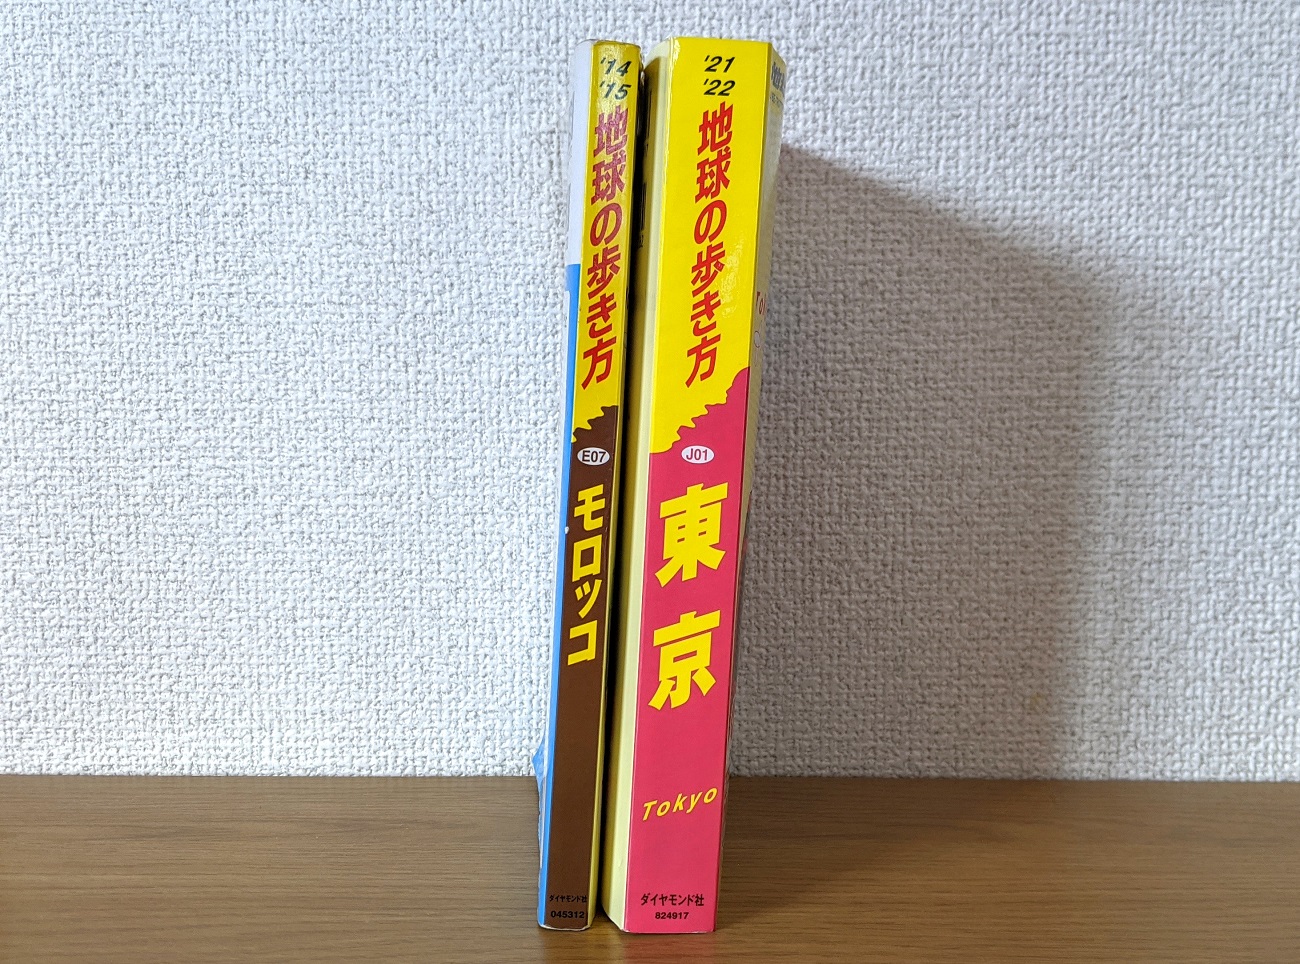 地球の歩き方 シリーズ初の国内版 東京 を読んだら今すぐ東京に行きたくなった 全464ページって辞書かよ ロケットニュース24